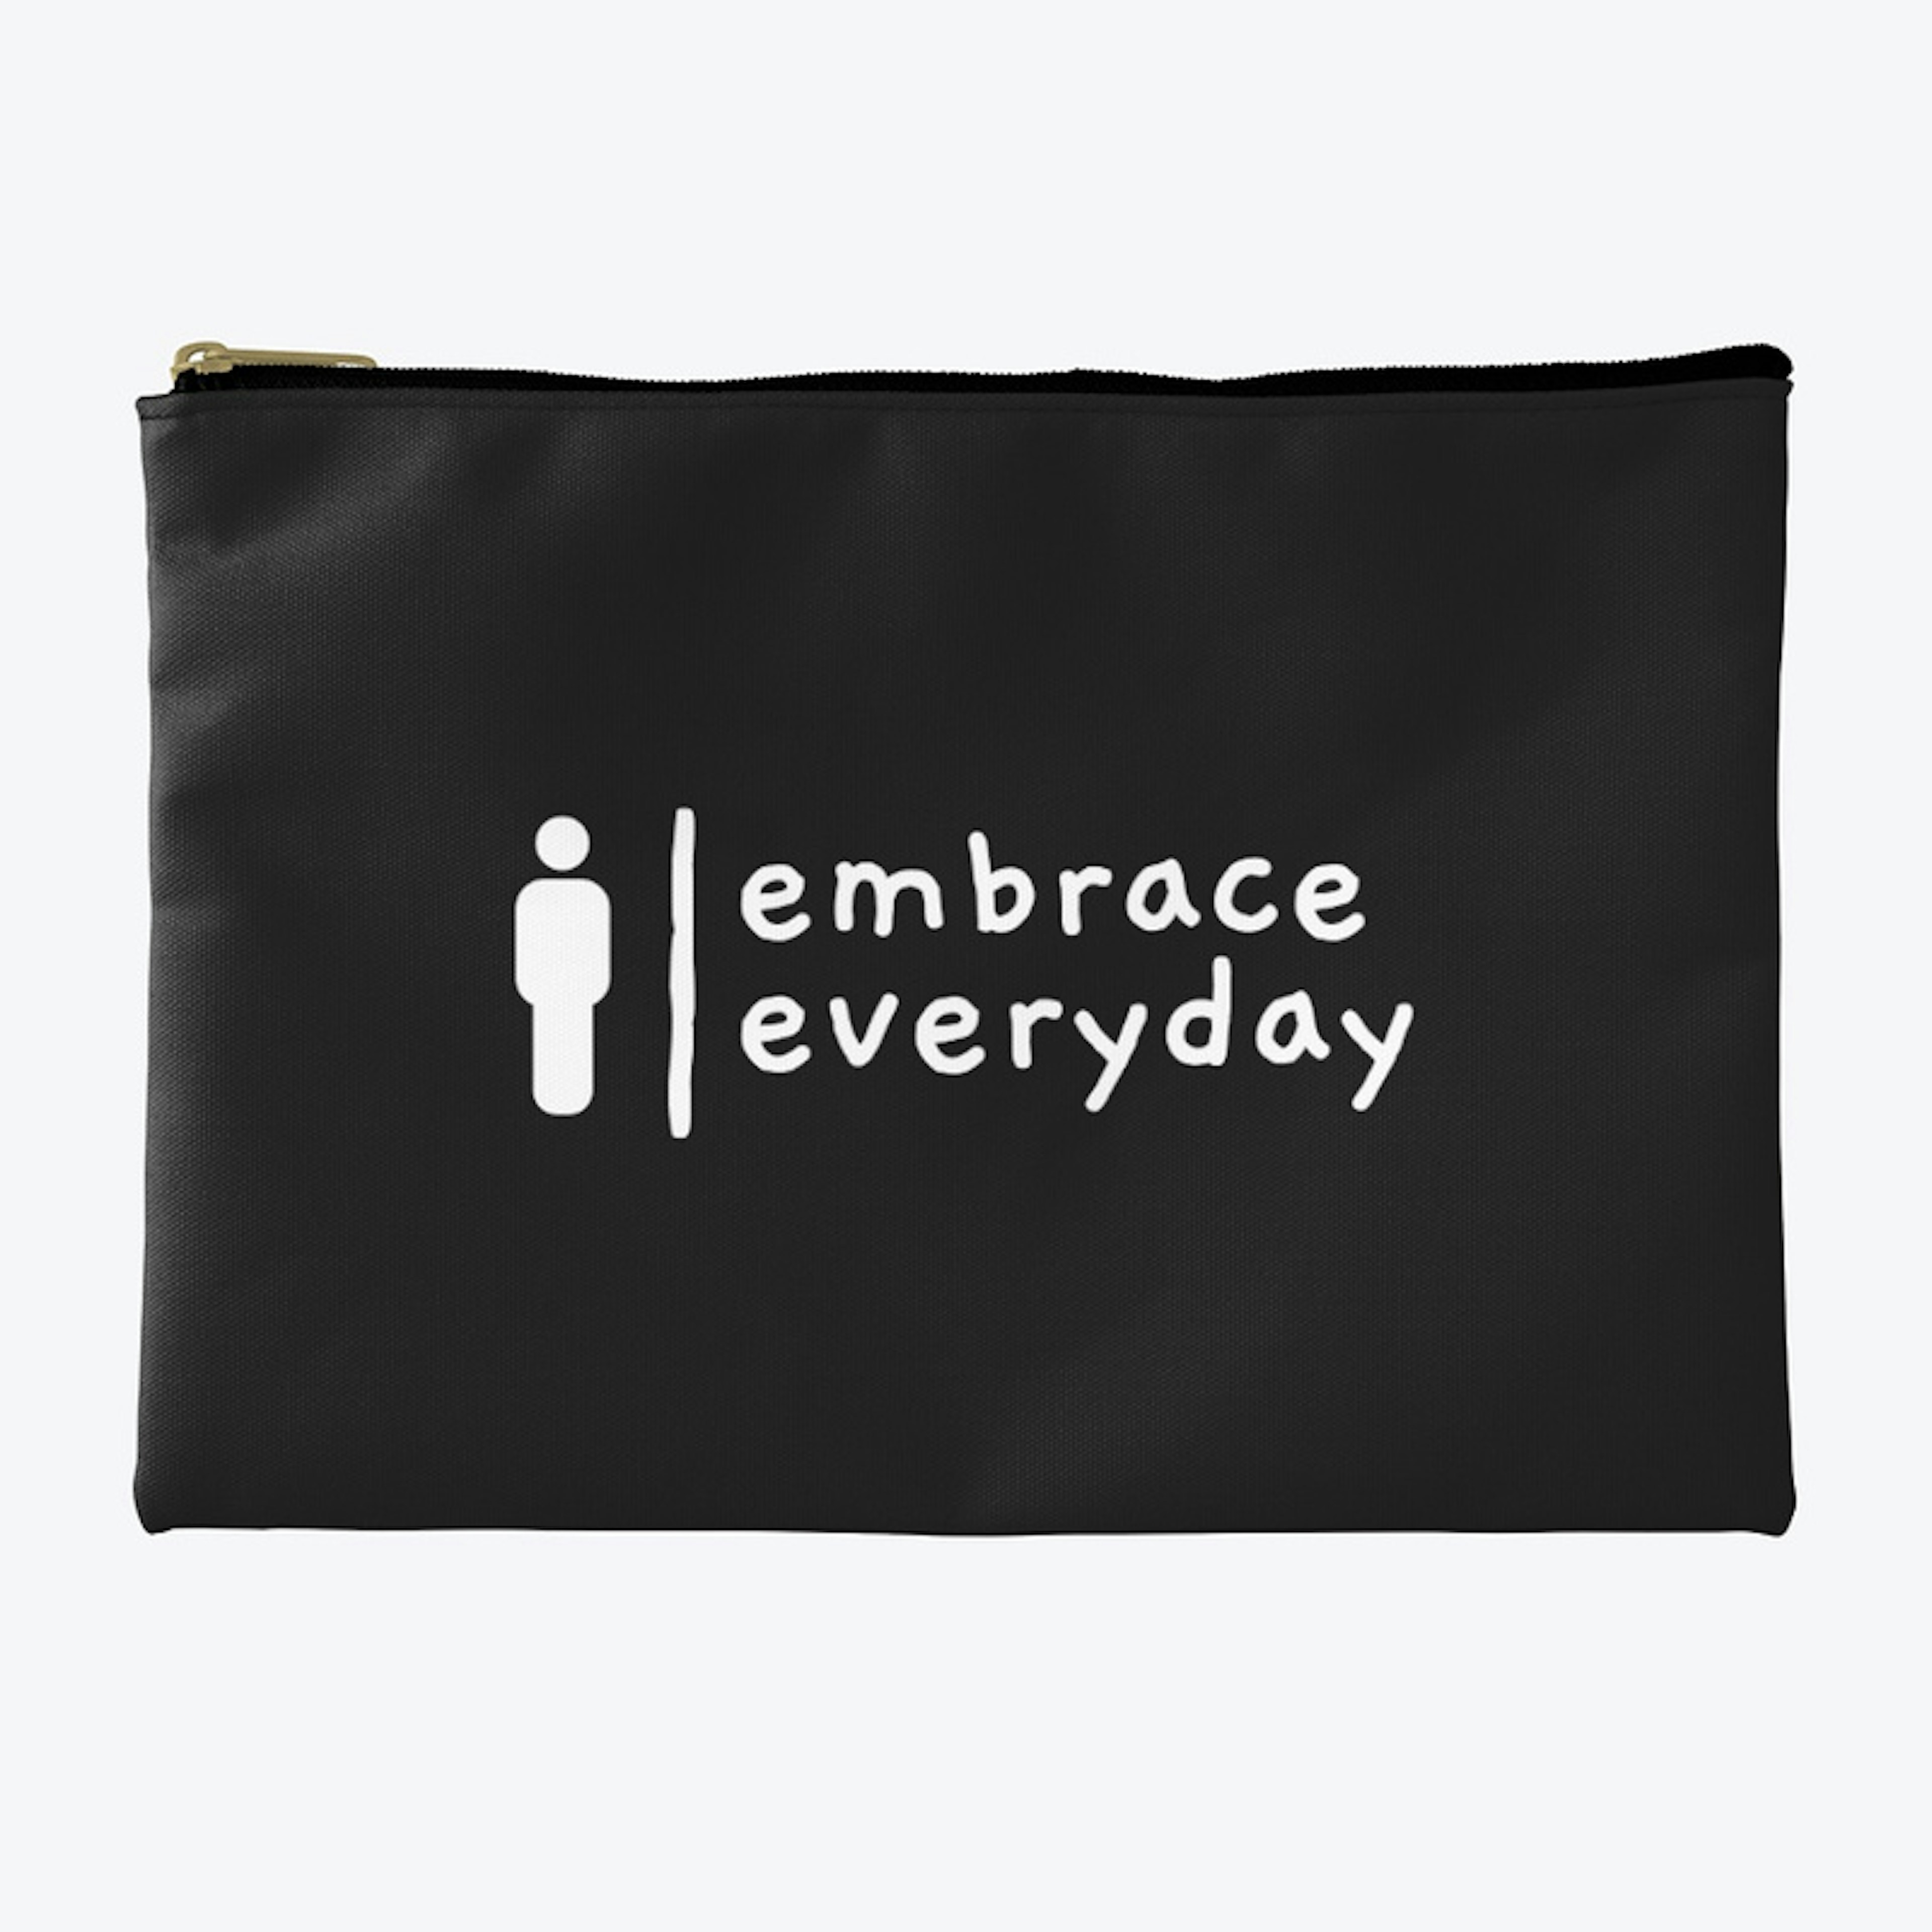 embrace everyday med bag